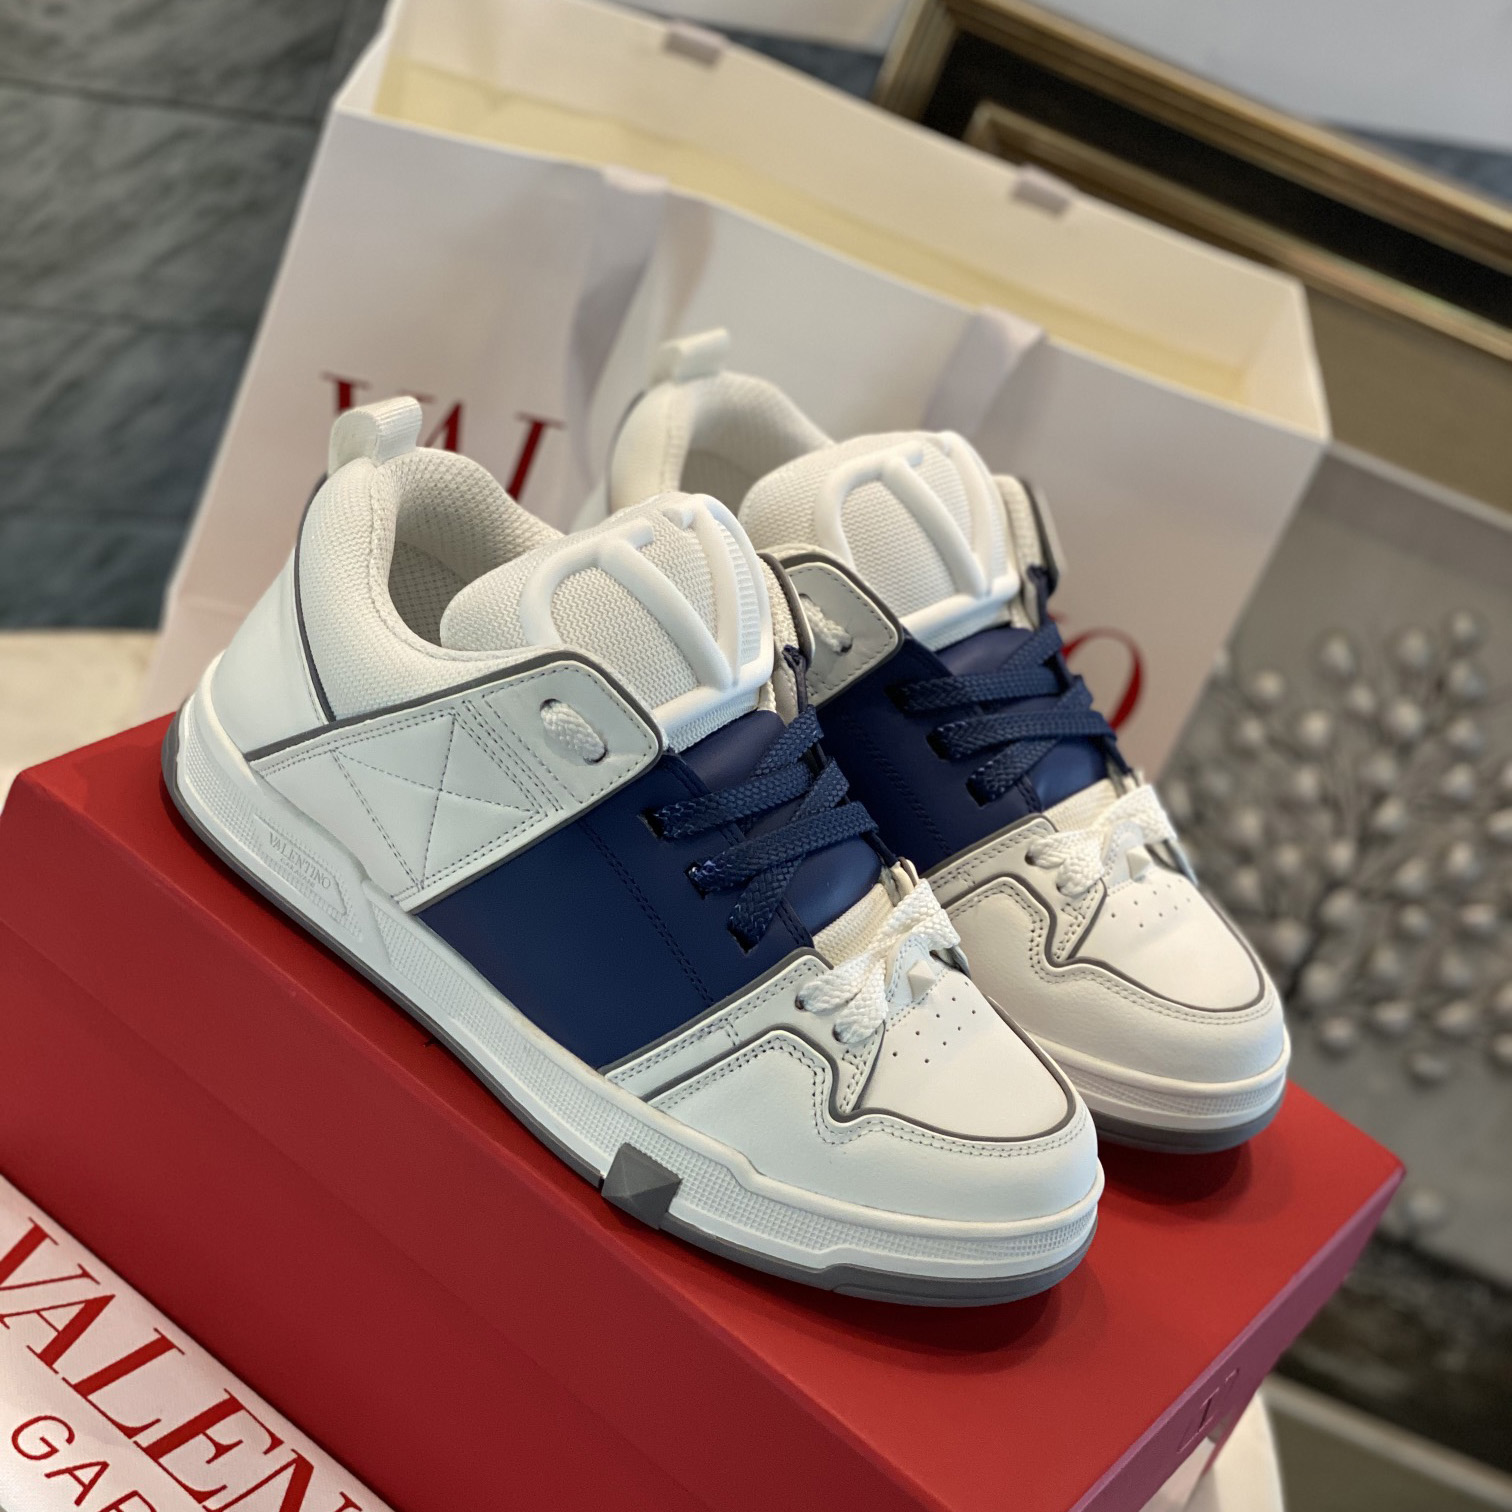 Valenti Open Skate Calfskin And Fabric Sneaker In White/Blue - DesignerGu